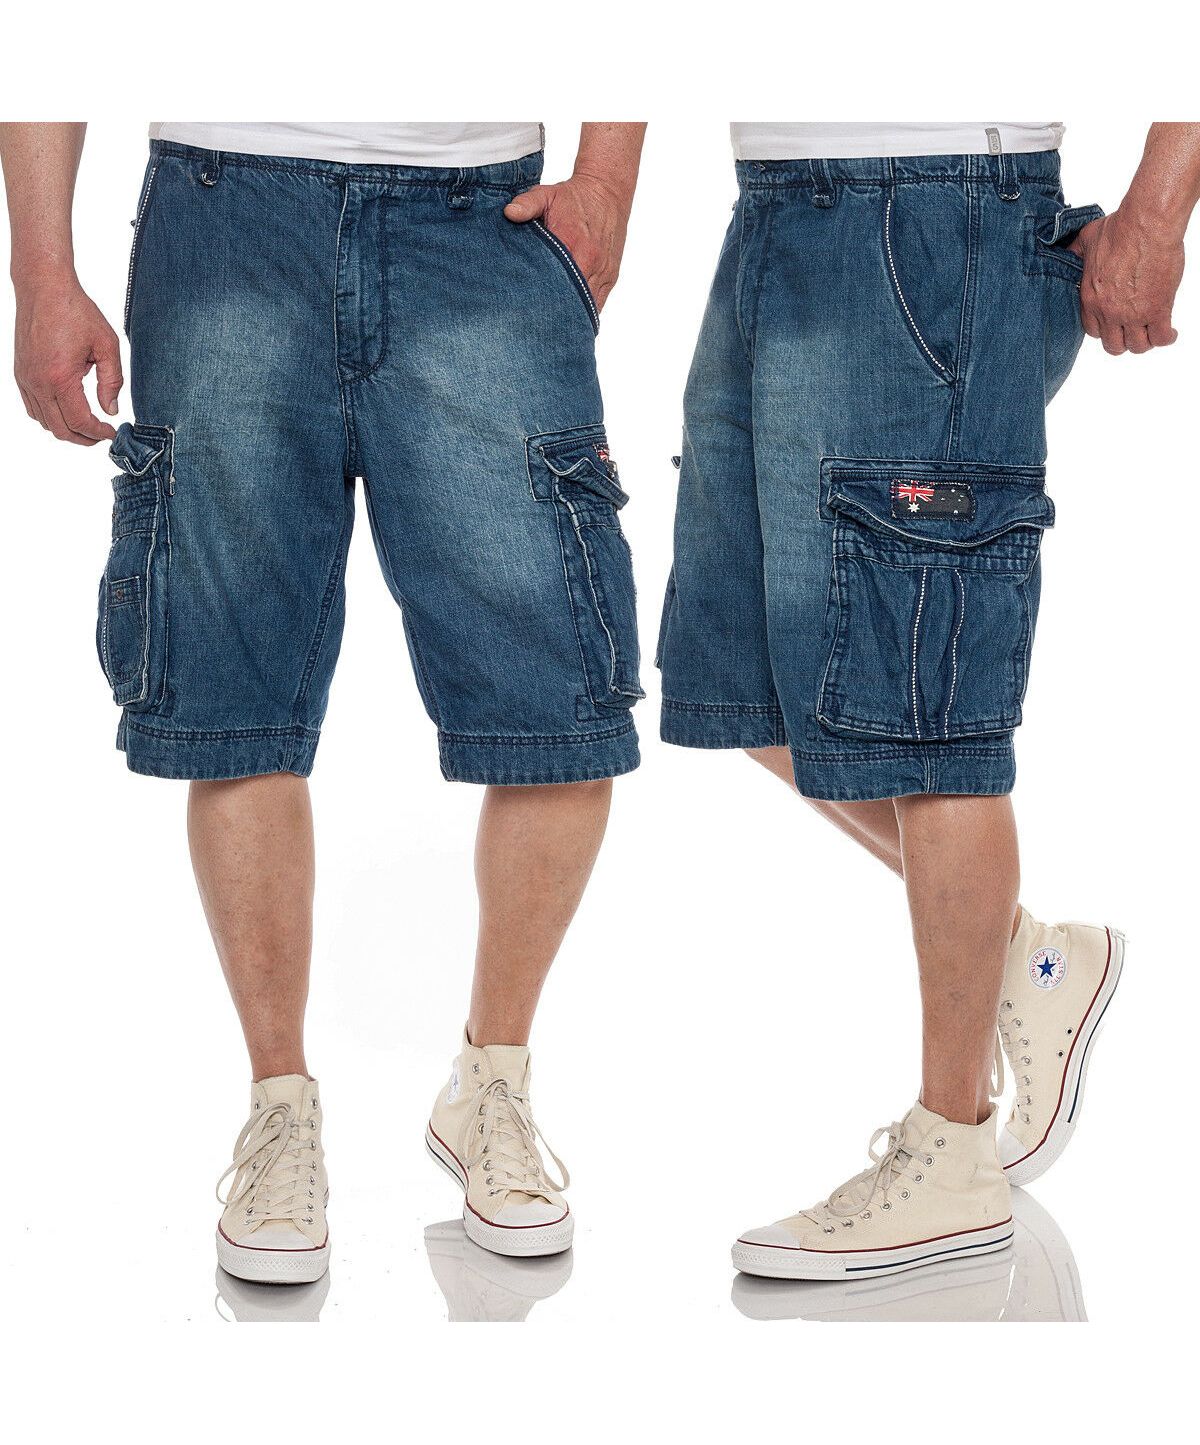 Шорты мужские джинсовые длинные